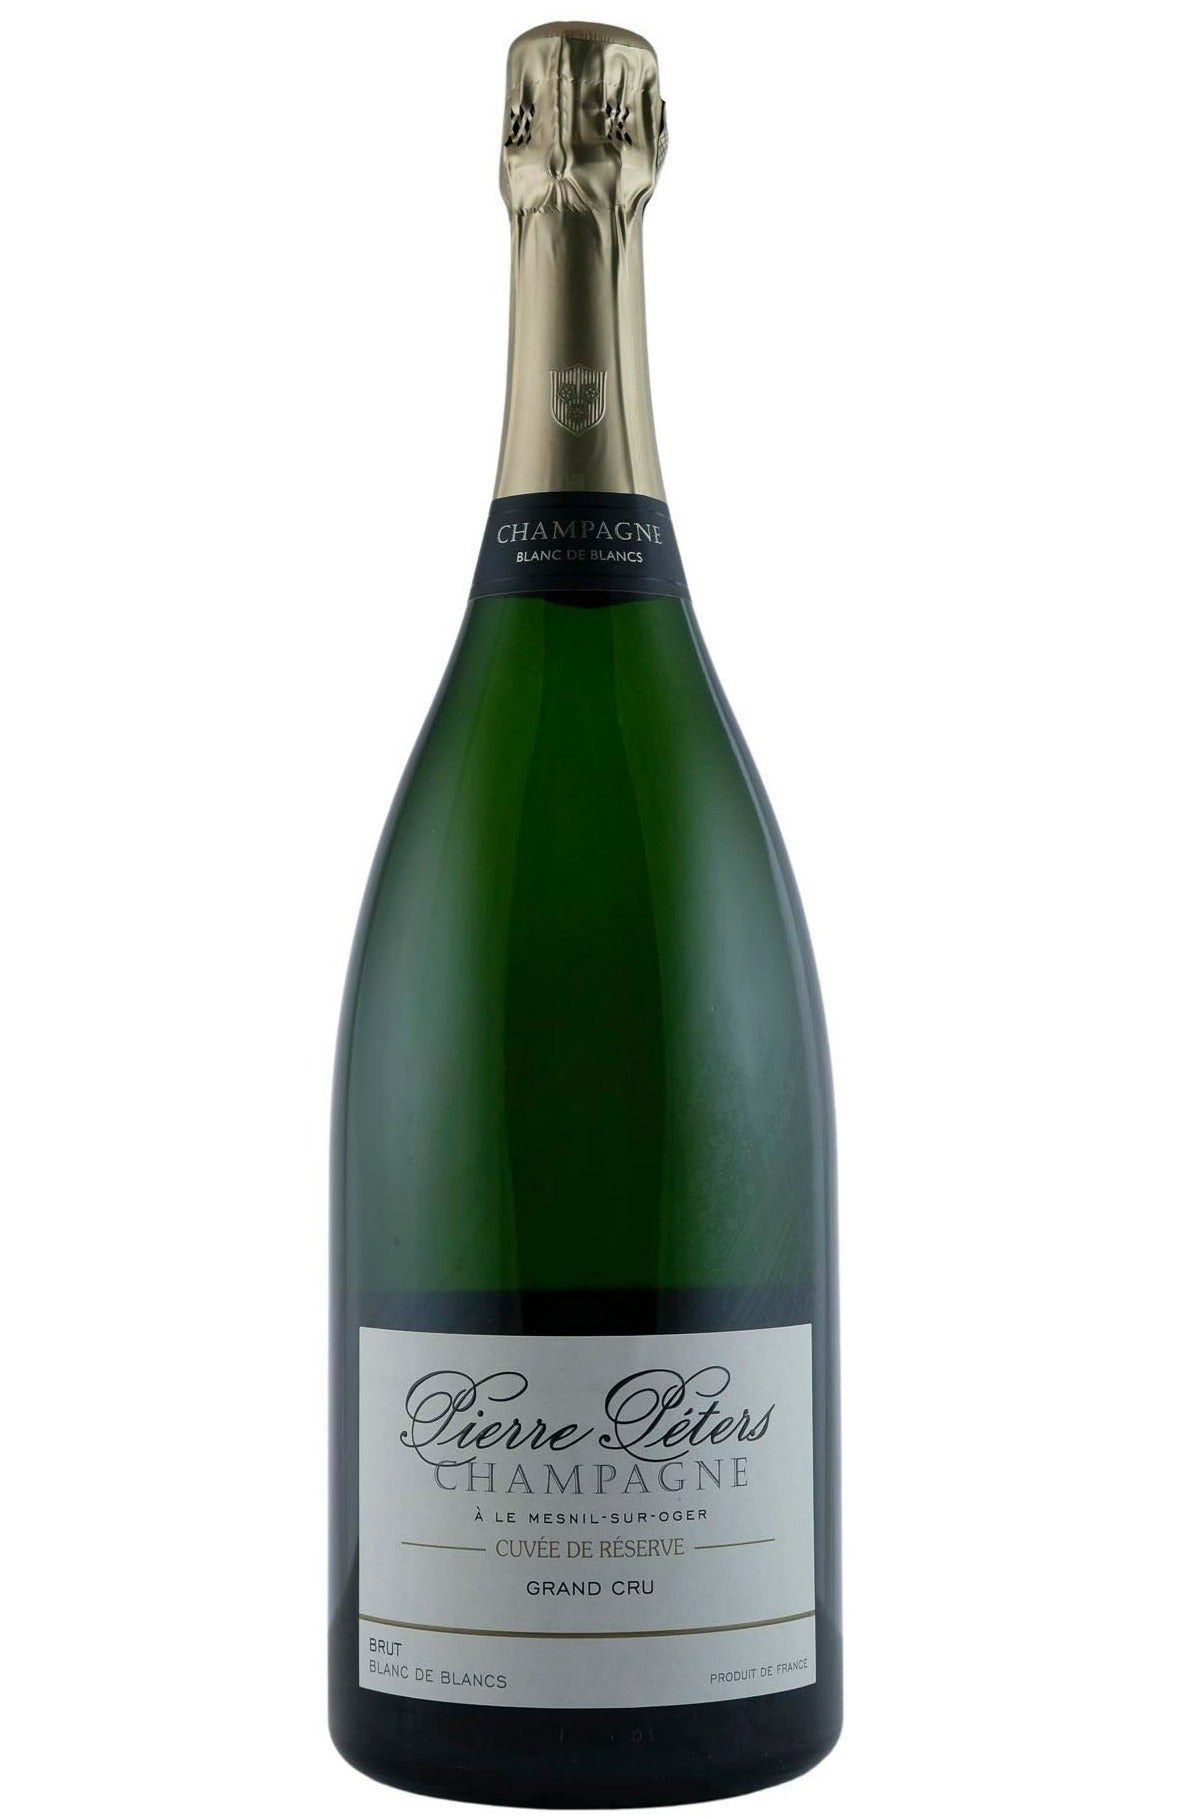 Champagne (1.5L) Brut Grand SF Cuvee de Reserve Peters BdB NV Pierre – Flatiron Cru